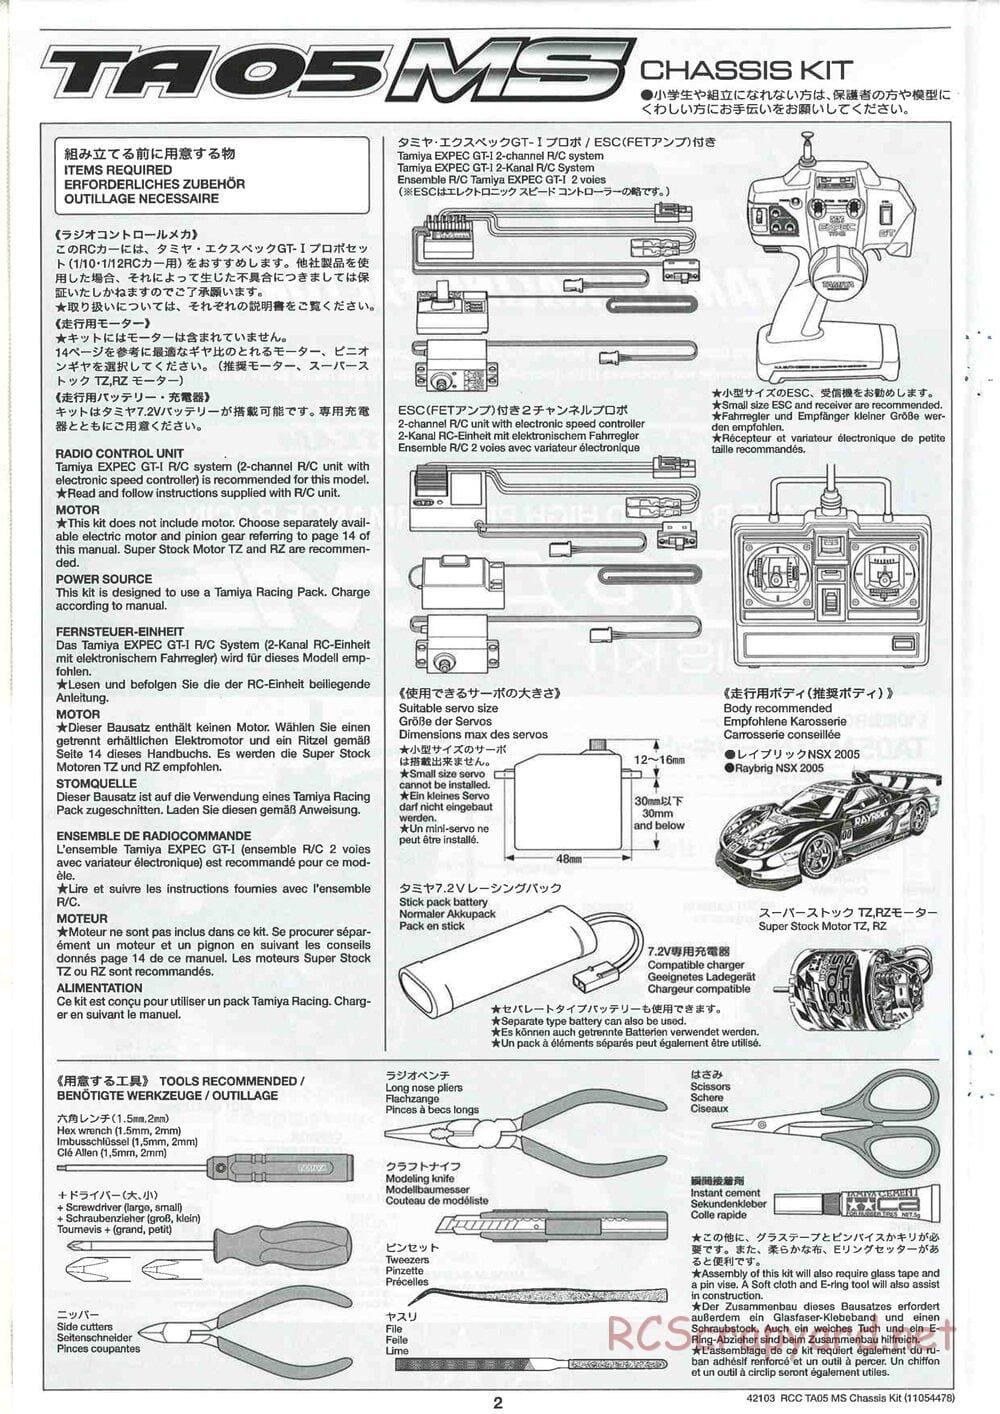 Tamiya - TA05 MS Chassis - Manual - Page 2